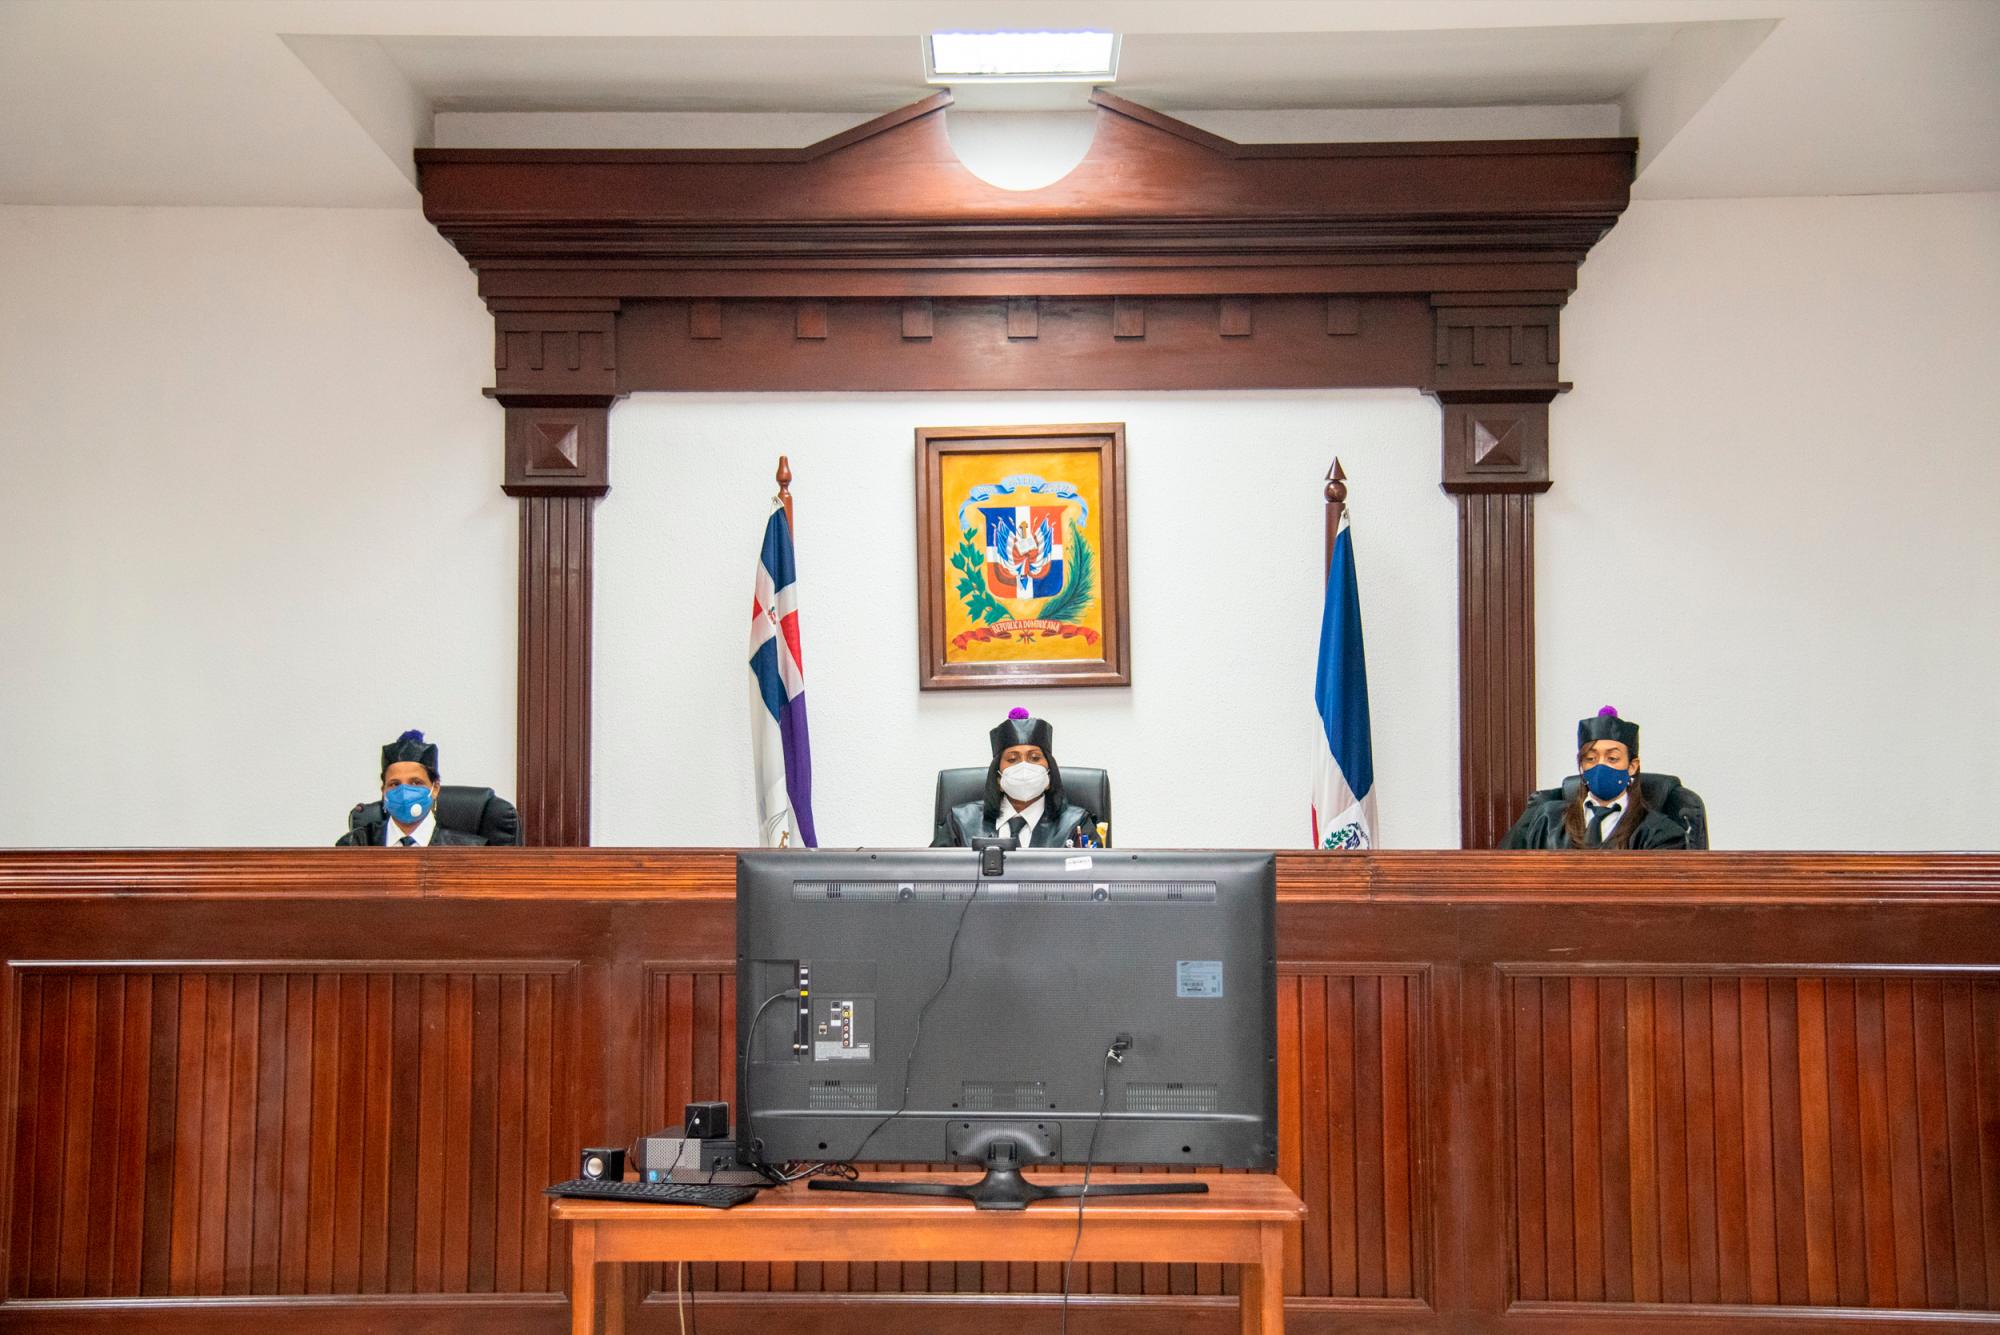 Vista de una jueza en sala de audiencia el miércoles 29 de julio de 2020, en uno de los tribunales del distrito. Foto: Juan Miguel Peña / Diario Libre.